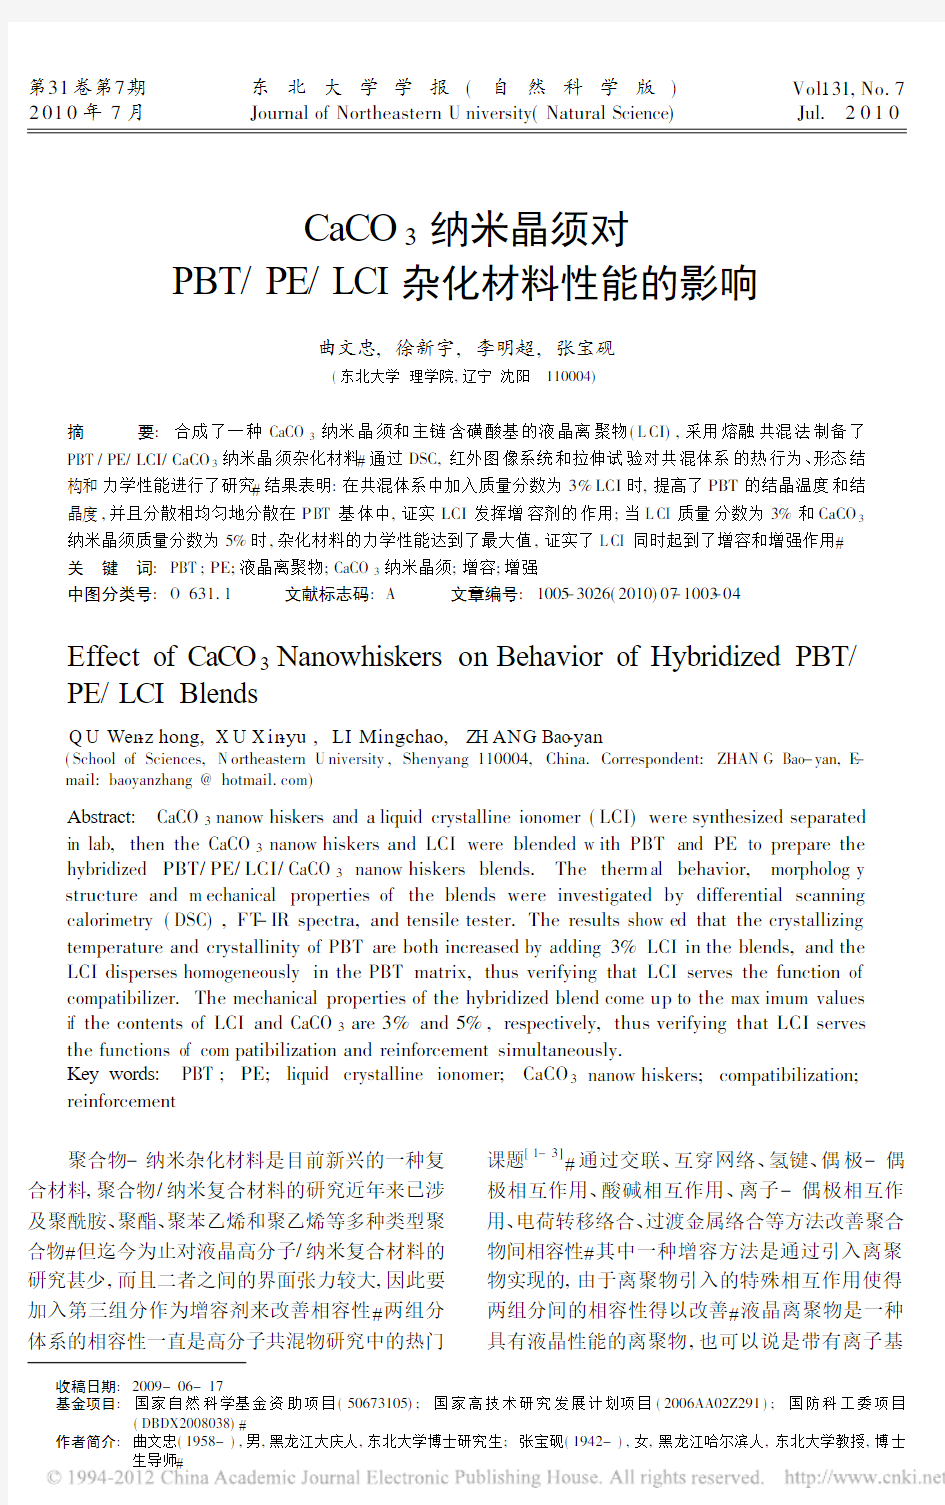 CaCO_3纳米晶须对PBT_PE_LCI杂化材料性能的影响